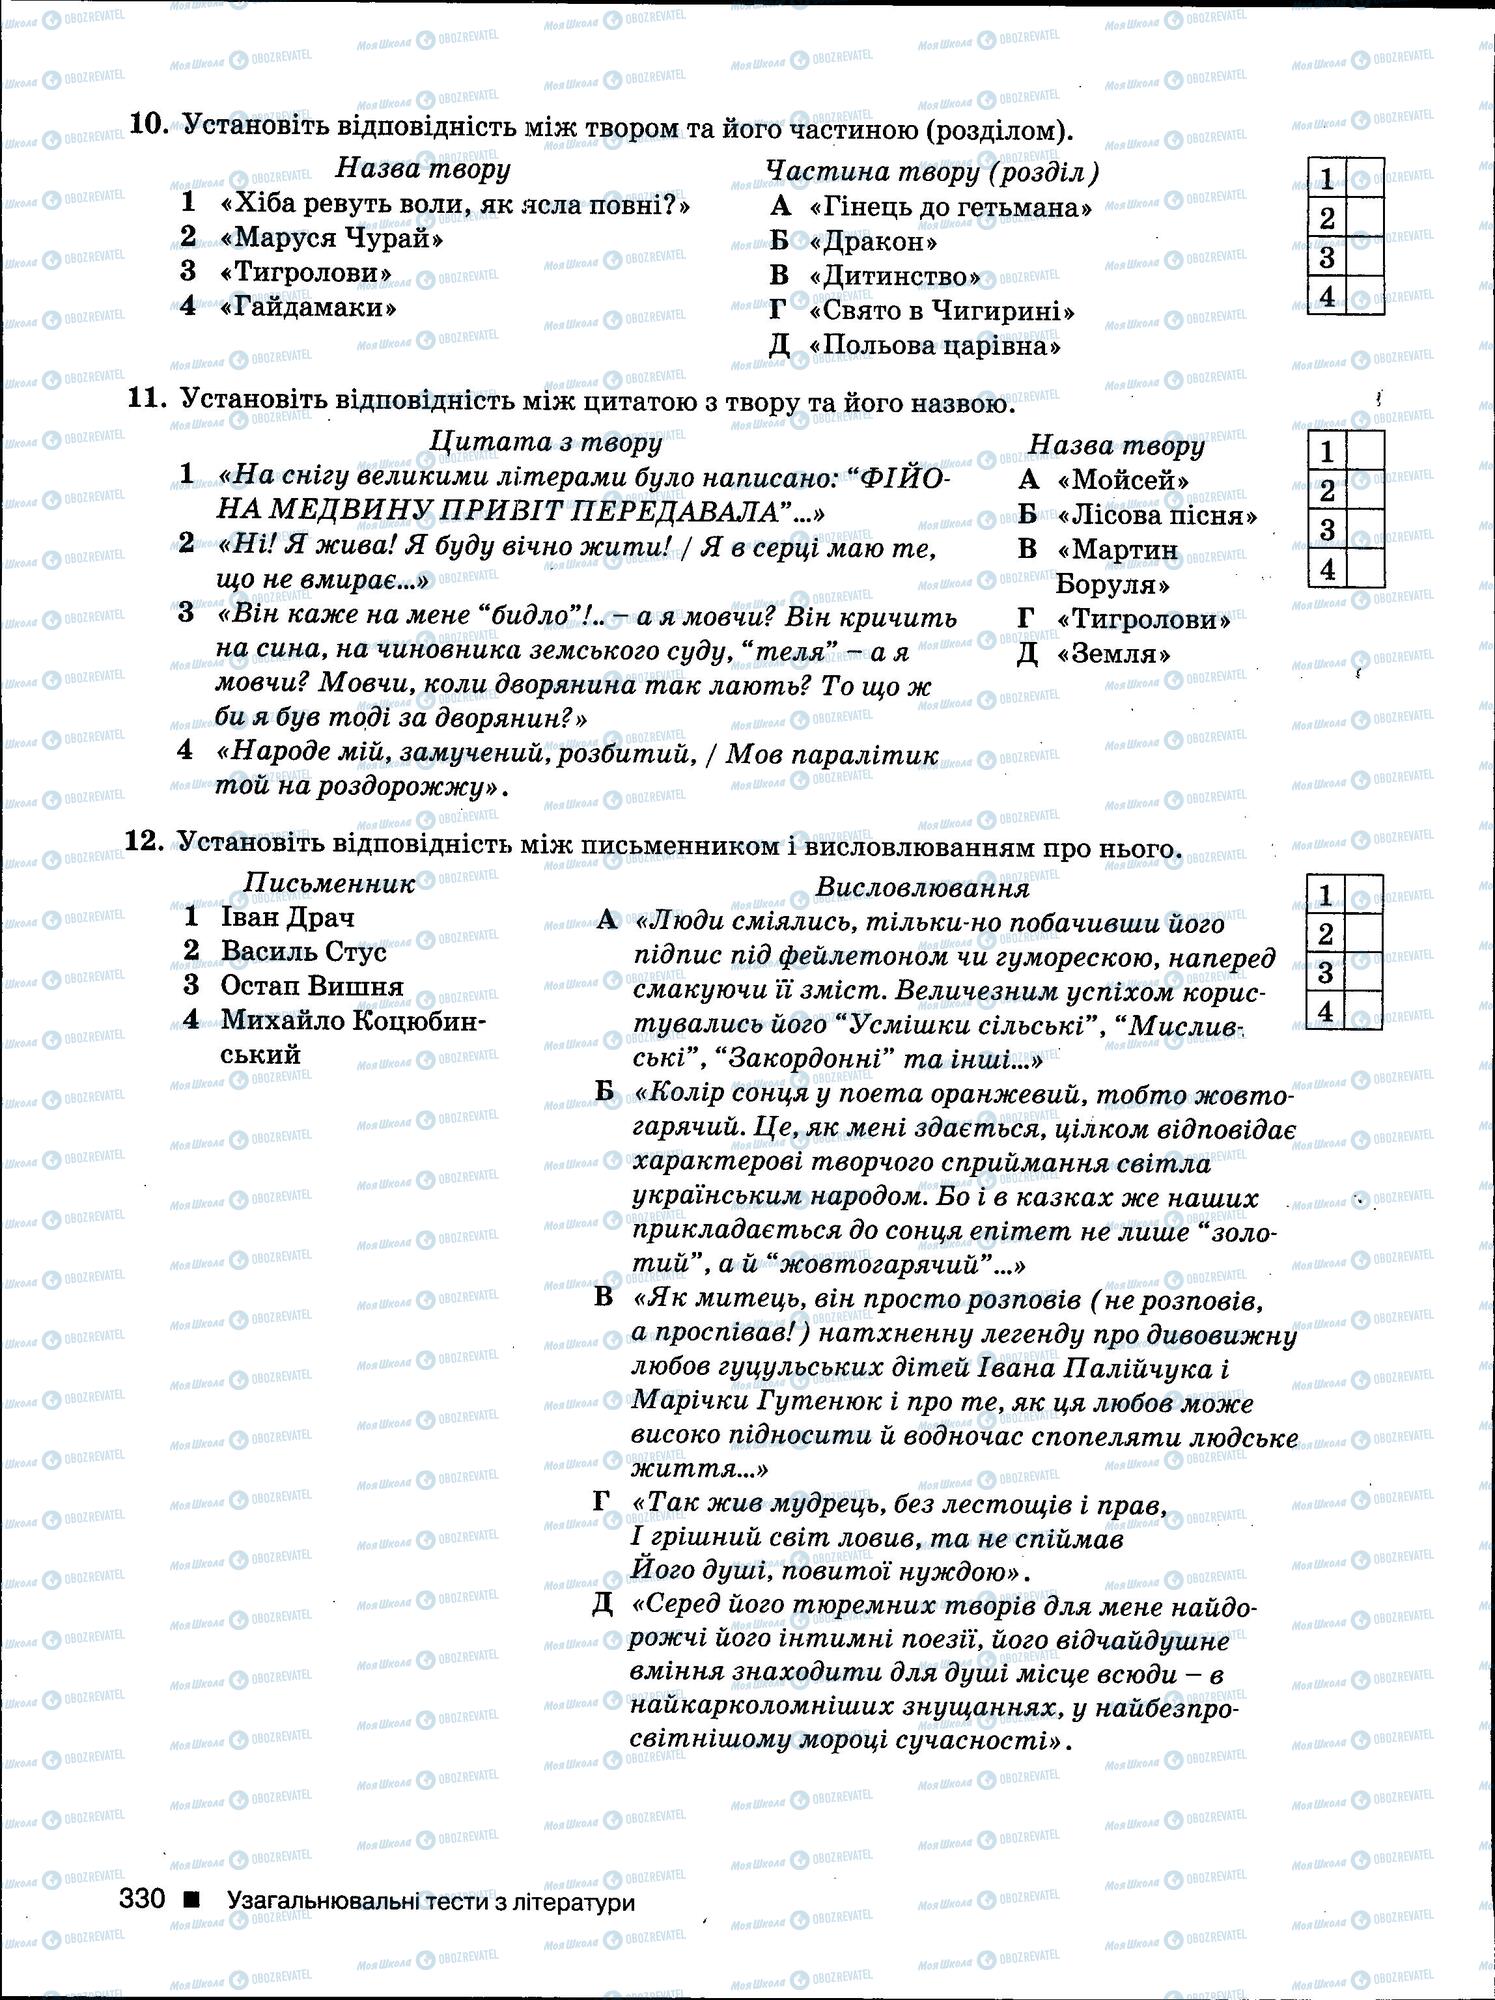 ЗНО Укр мова 11 класс страница 330